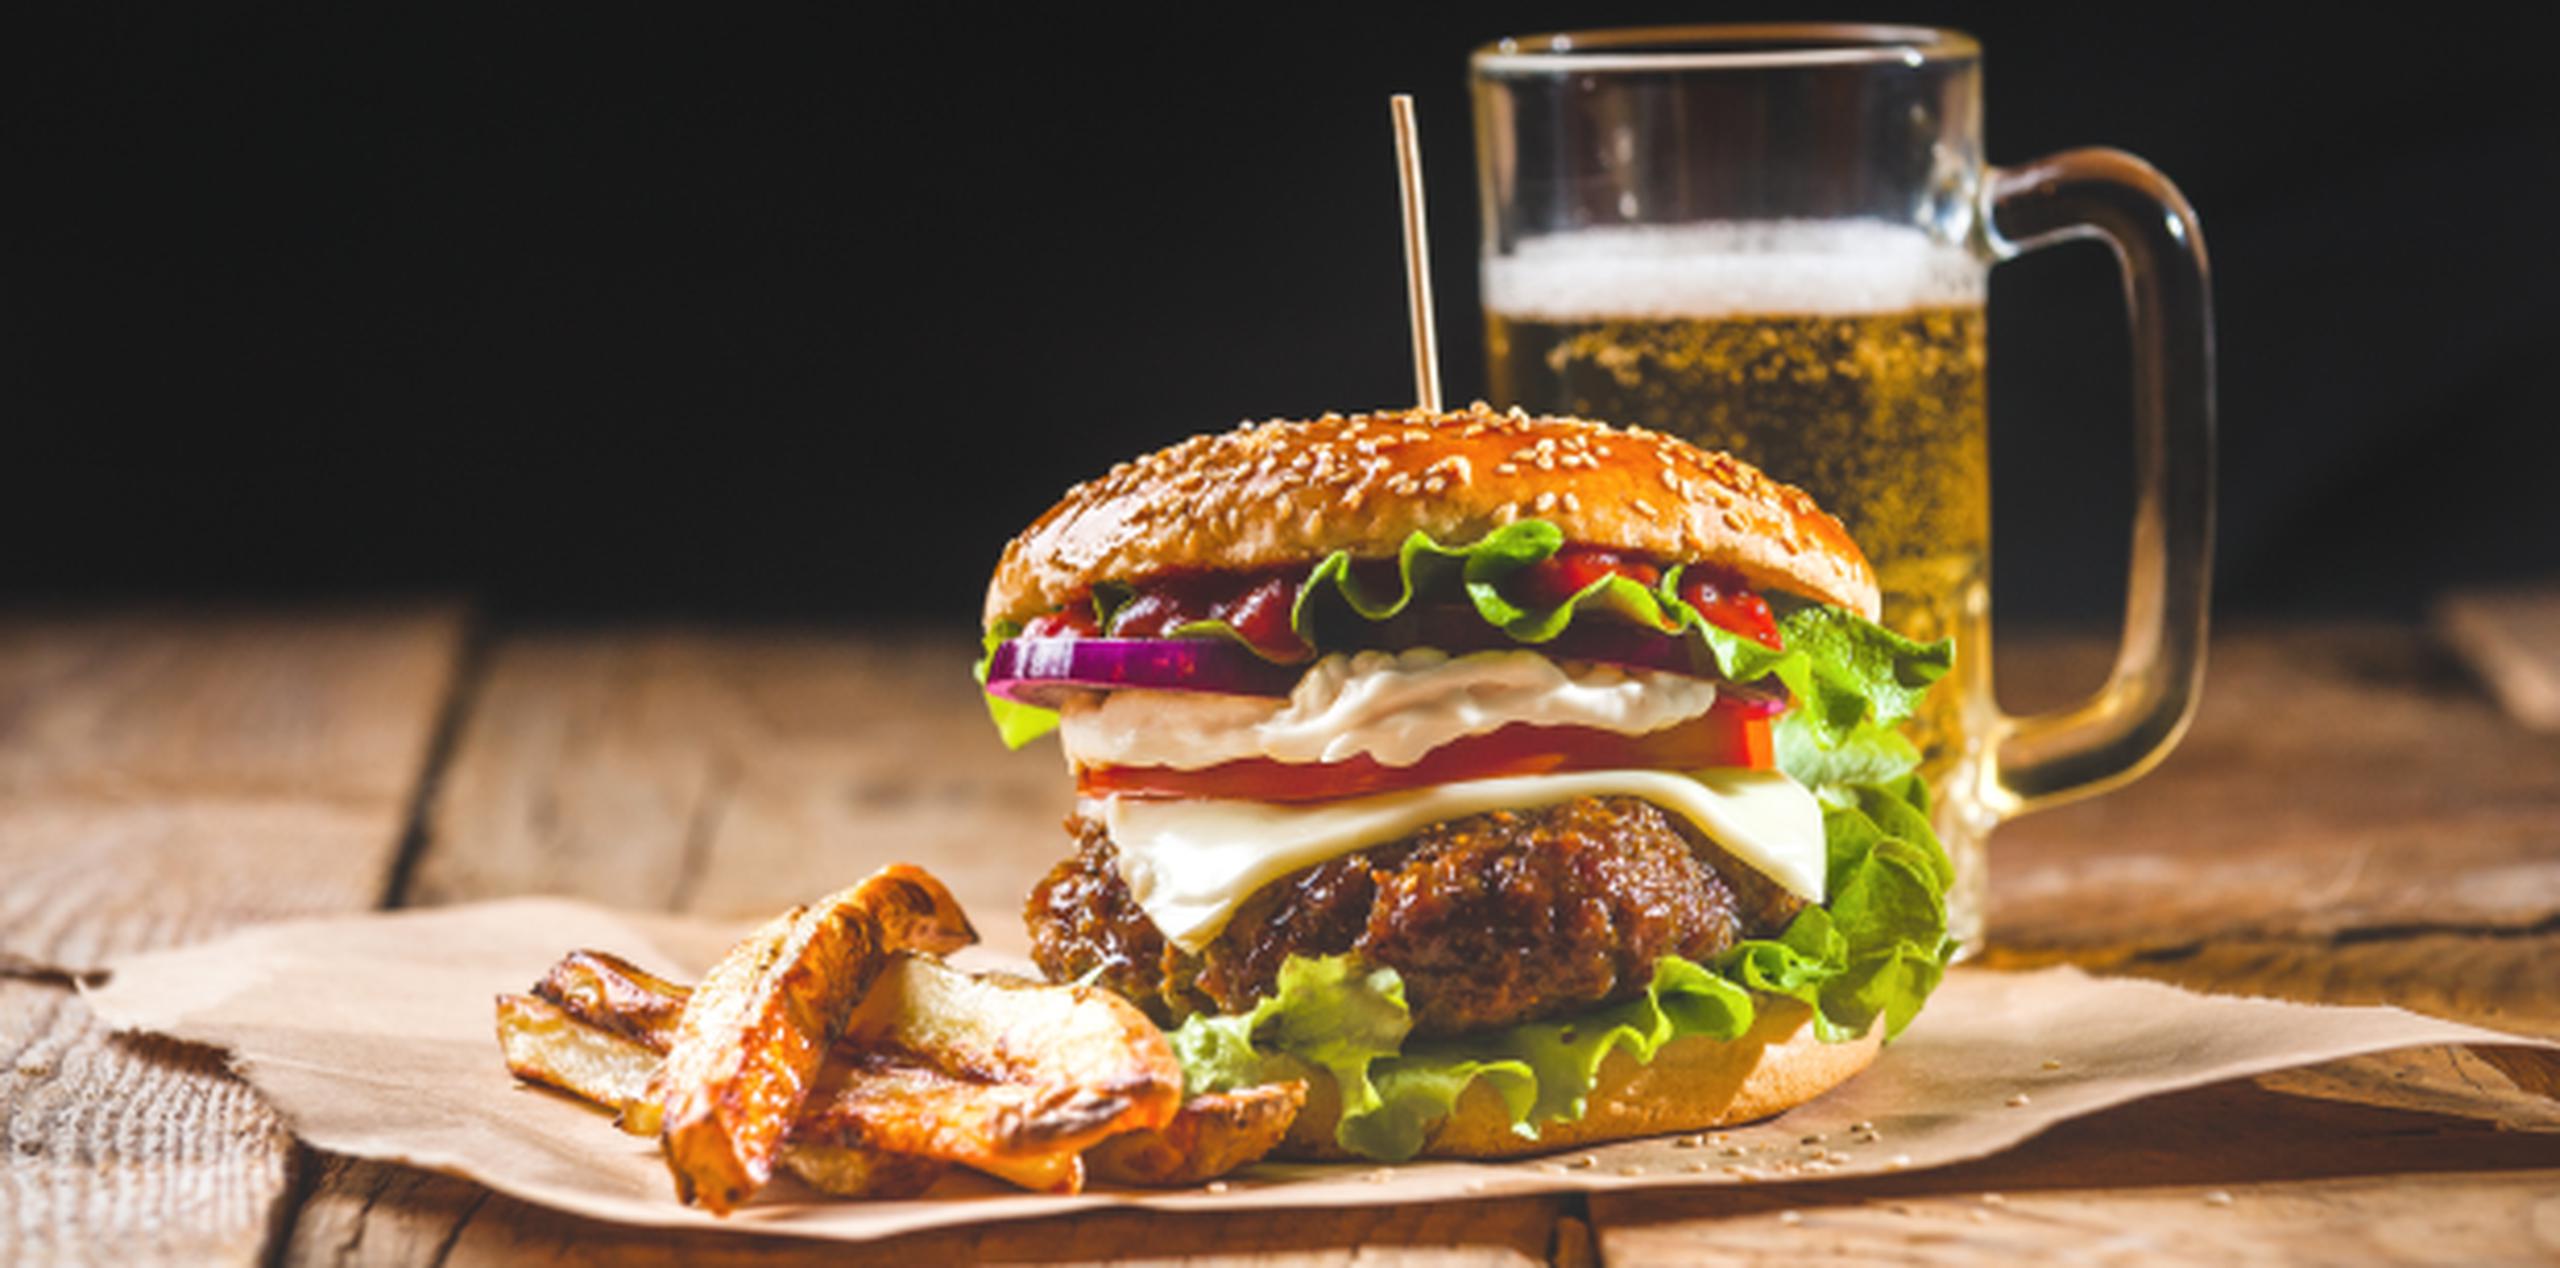 Las hamburguesas pueden llegar a alterar procesos químicos, los cuales están asociados a la depresión y ansiedad. (Shutterstock)